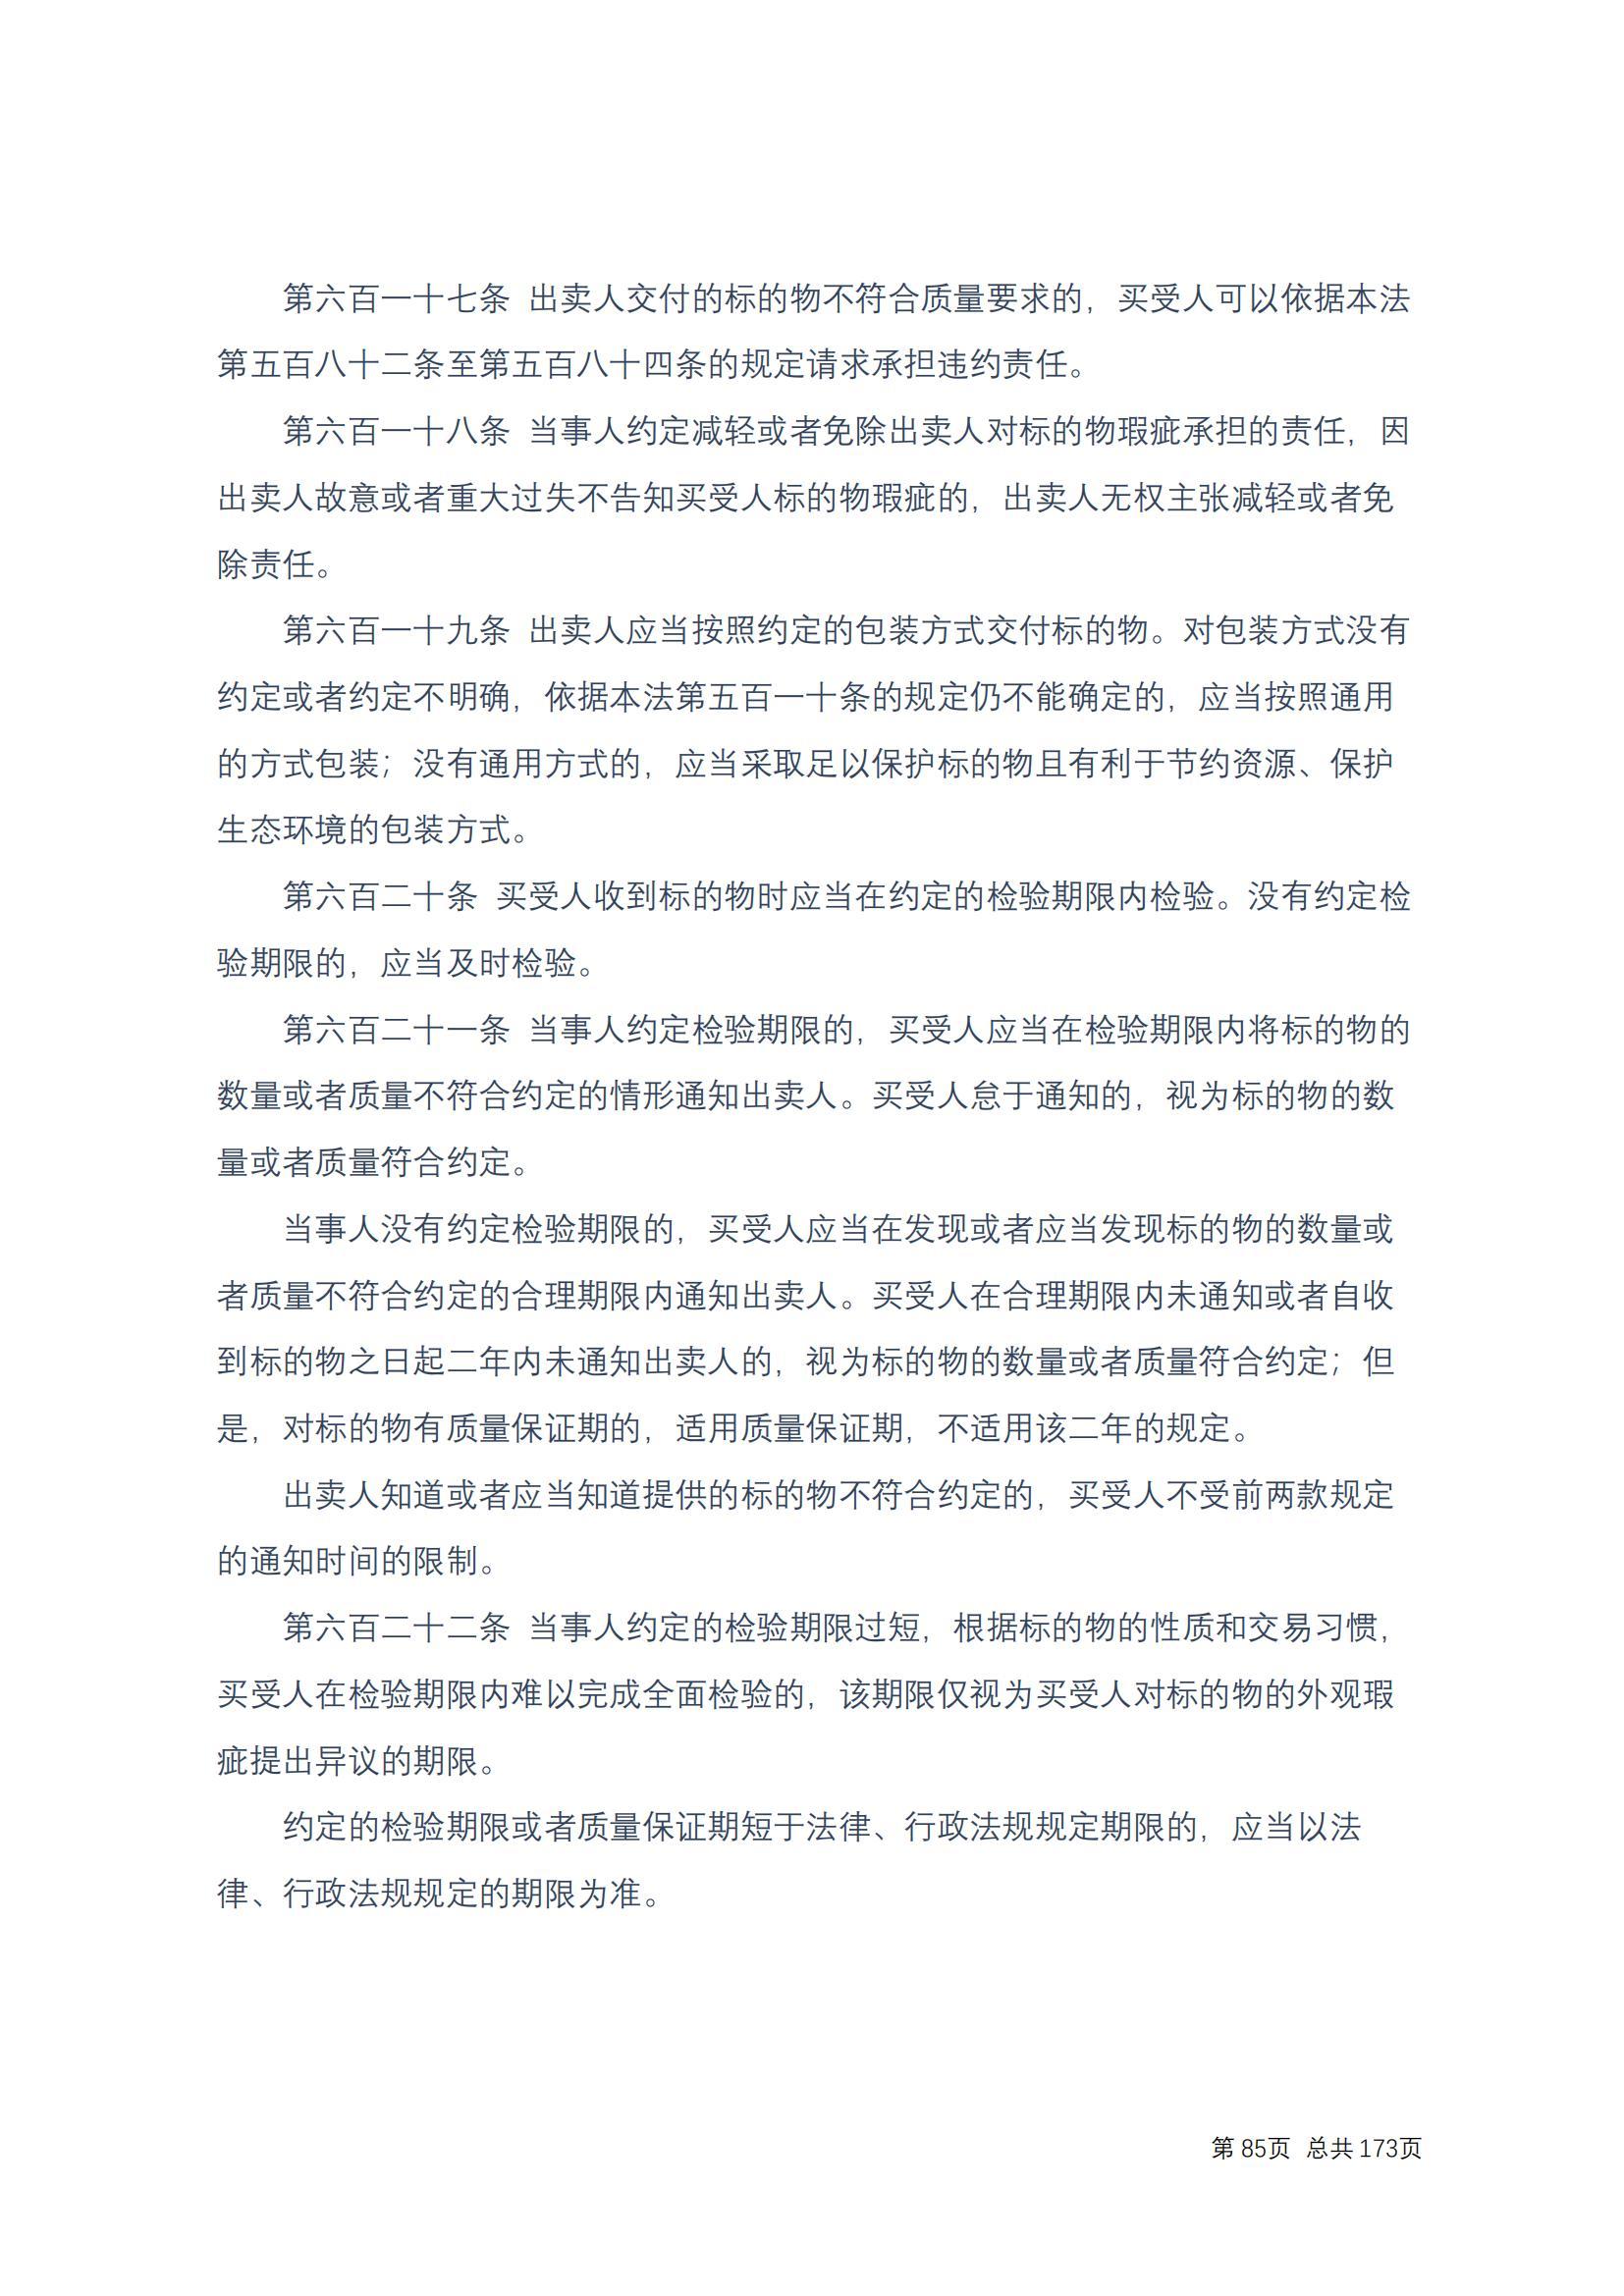 中华人民共和国民法典 修改过_84